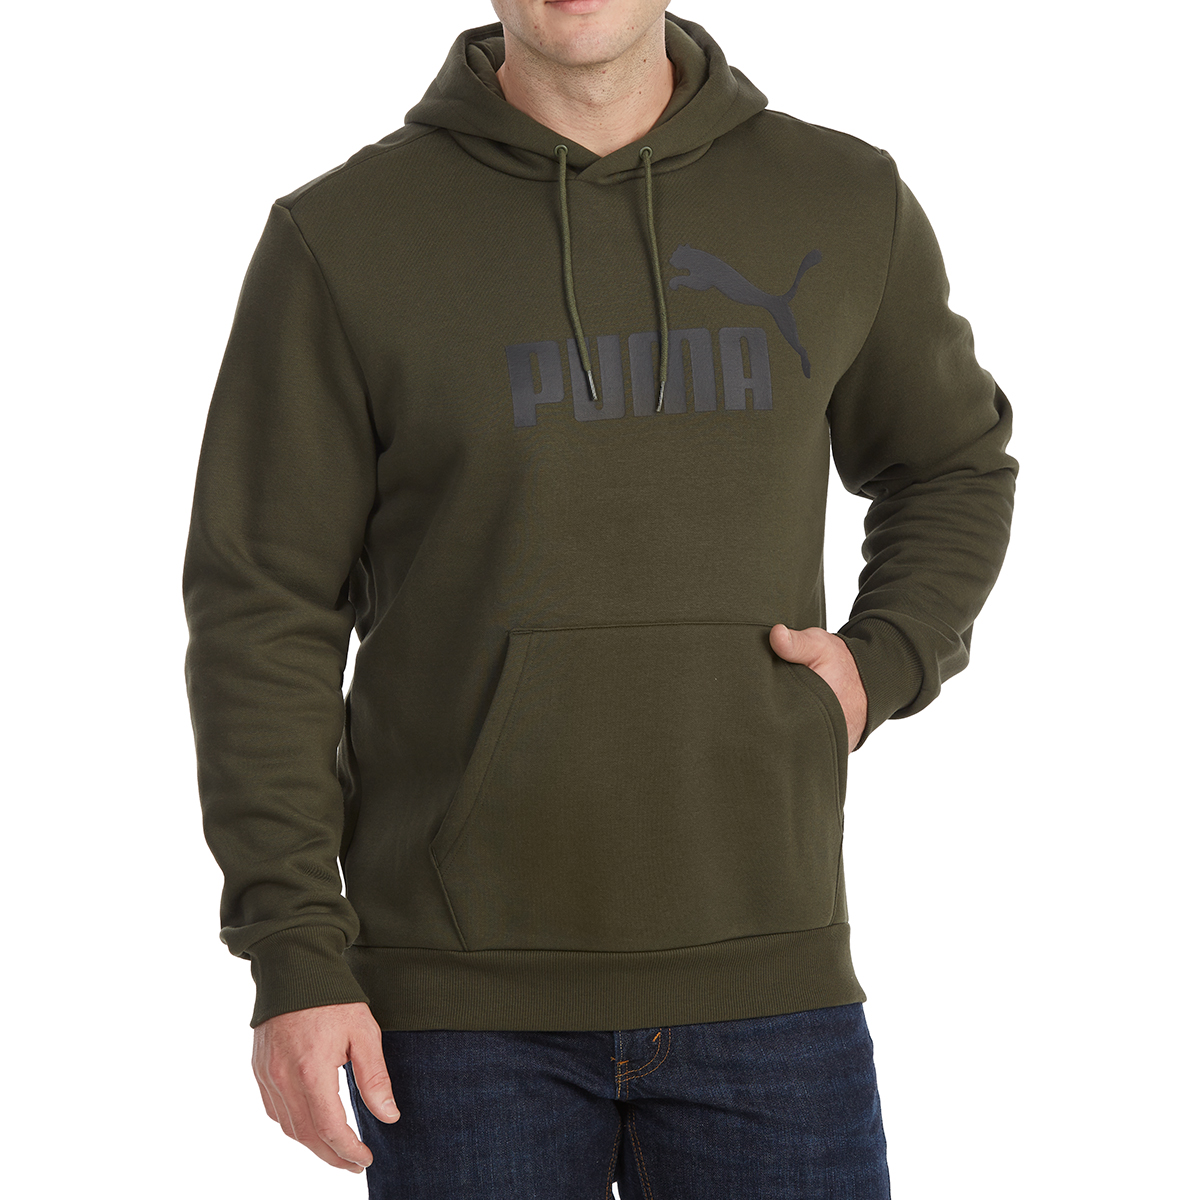 Puma Men's Essentials Fleece Pullover Hoodie - Green, S